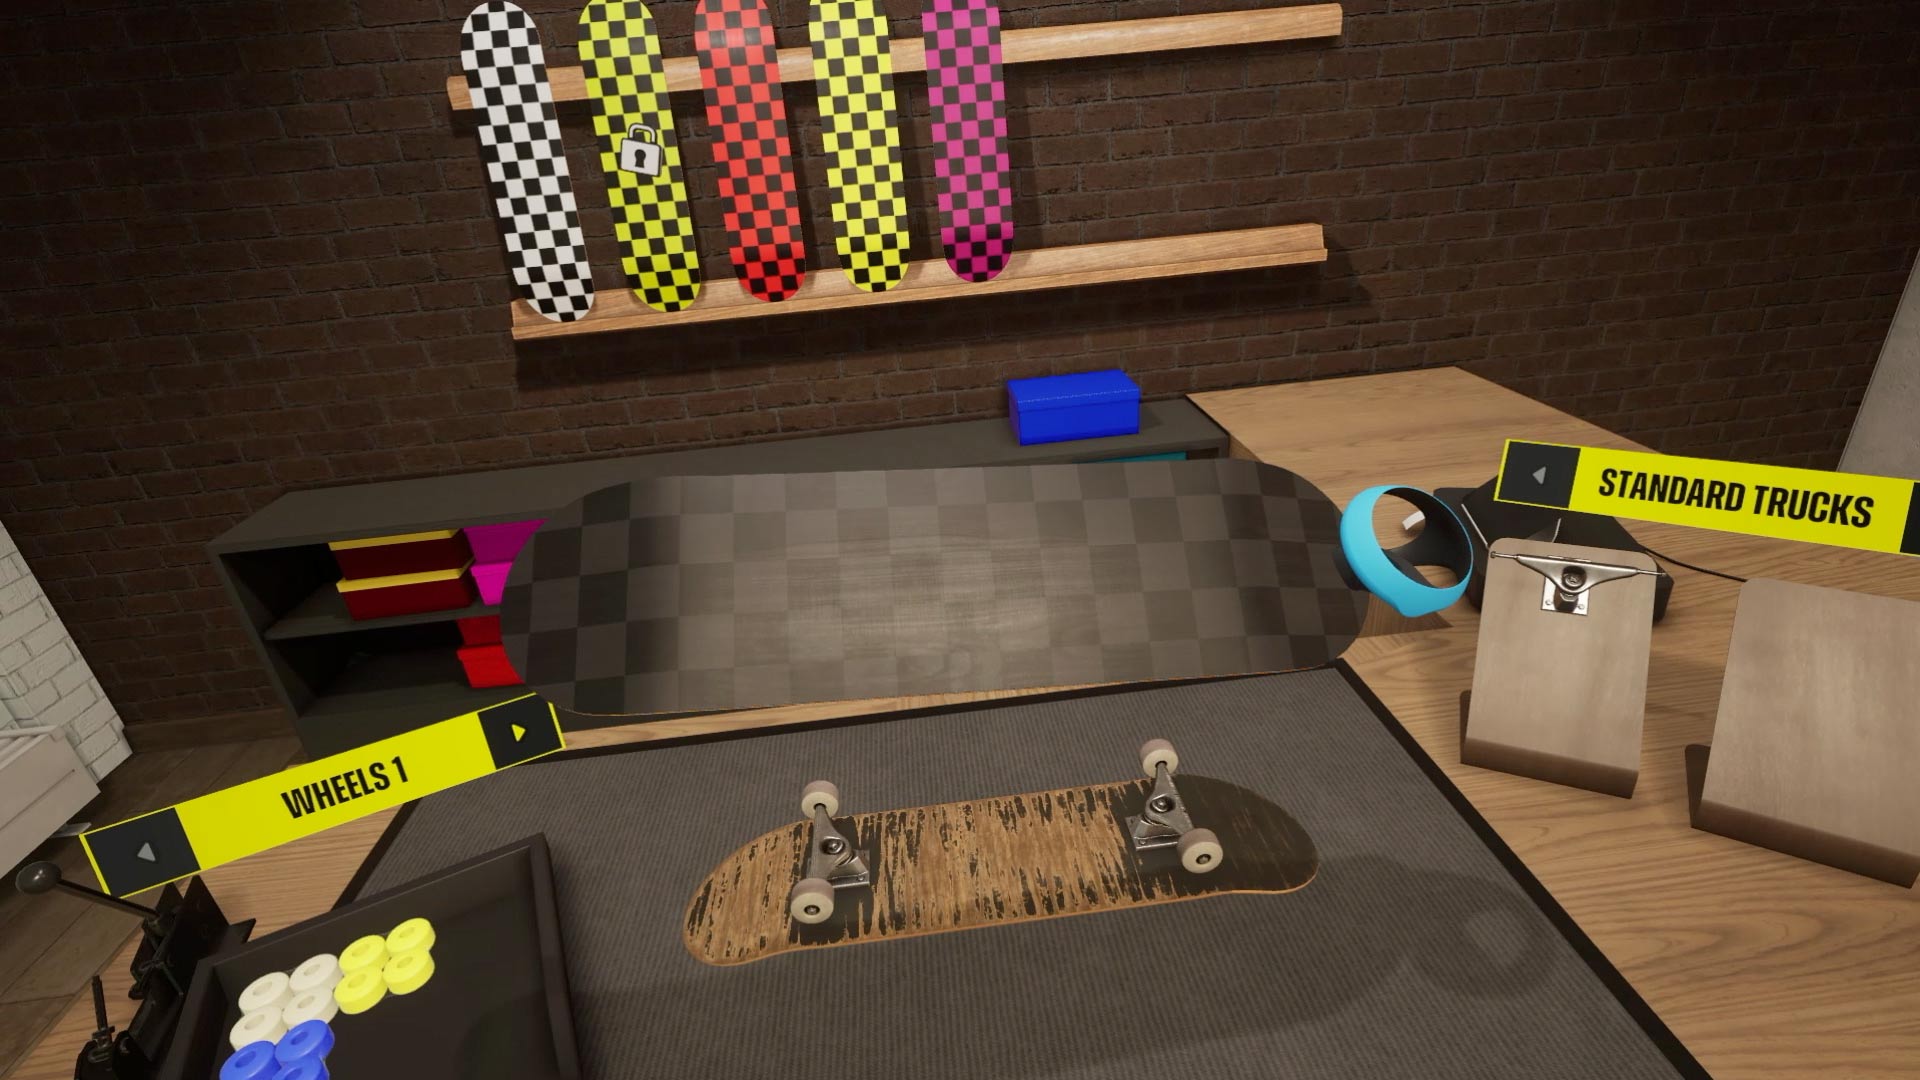 VR Skater on Steam